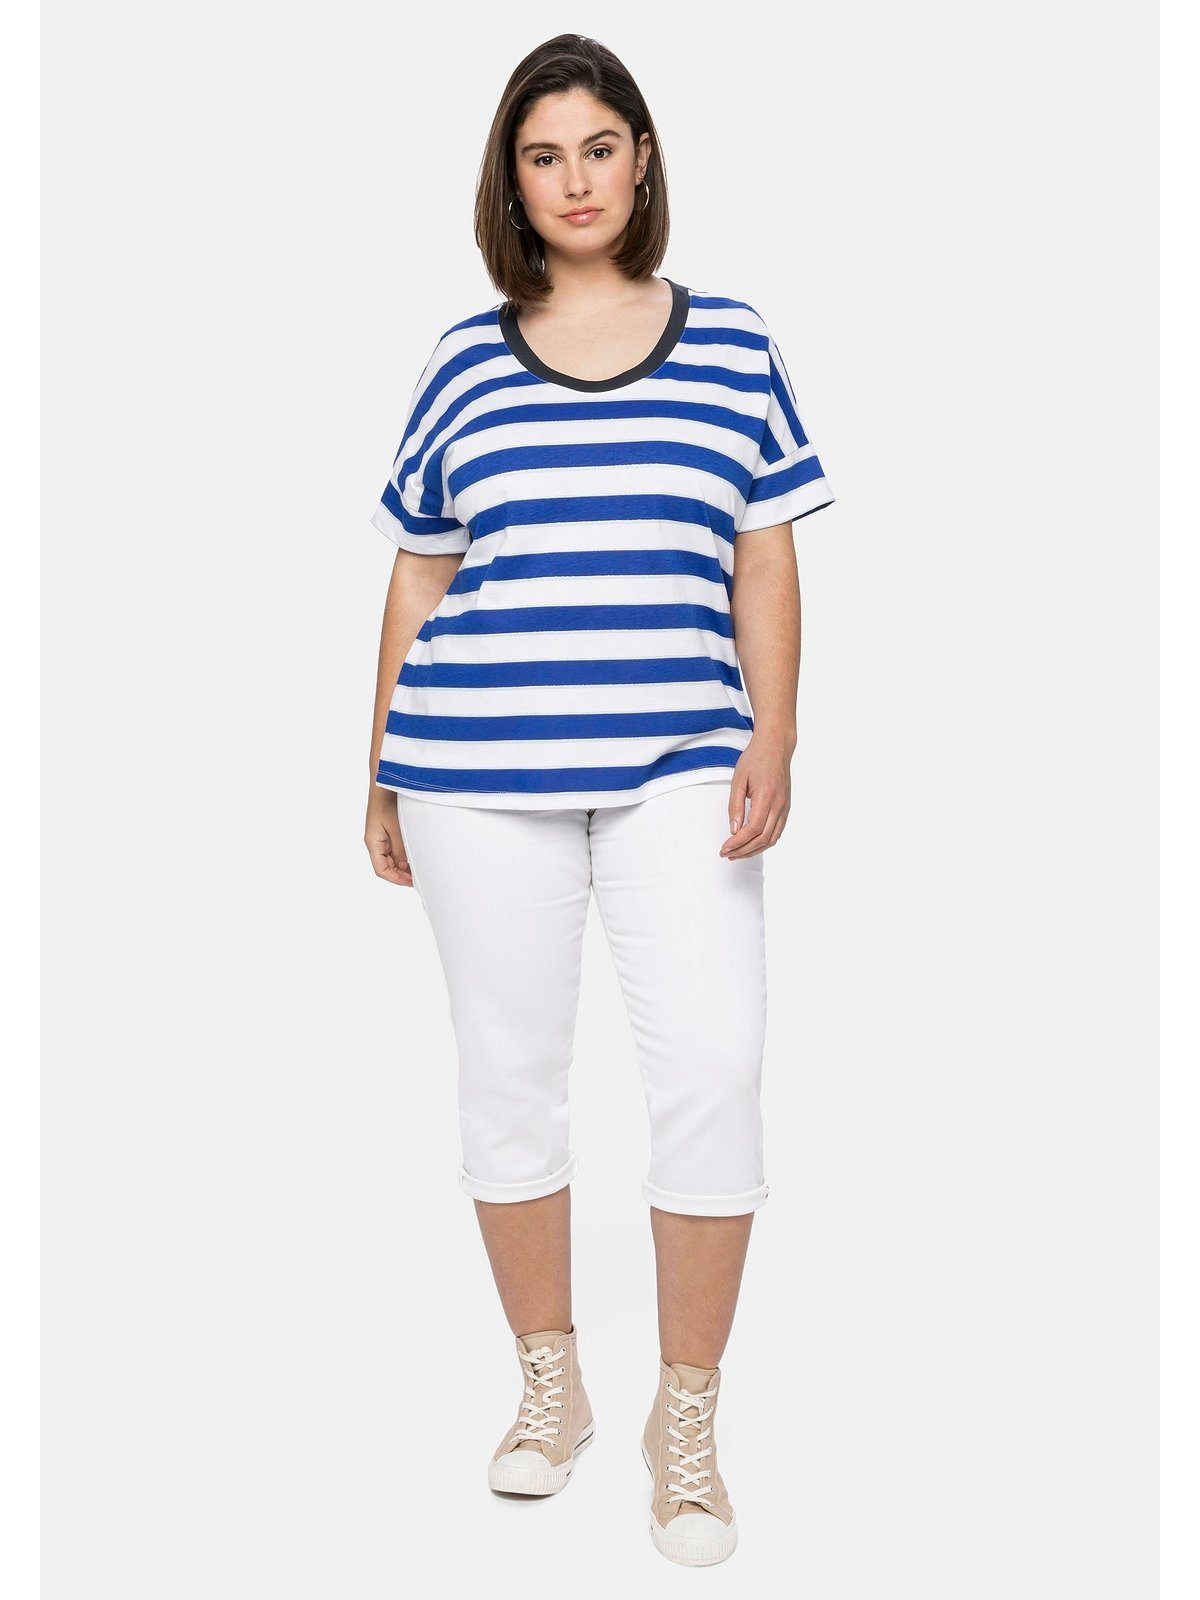 Oversize-Form Größen Glitzergarn, in Sheego royalblau-weiß T-Shirt mit Große